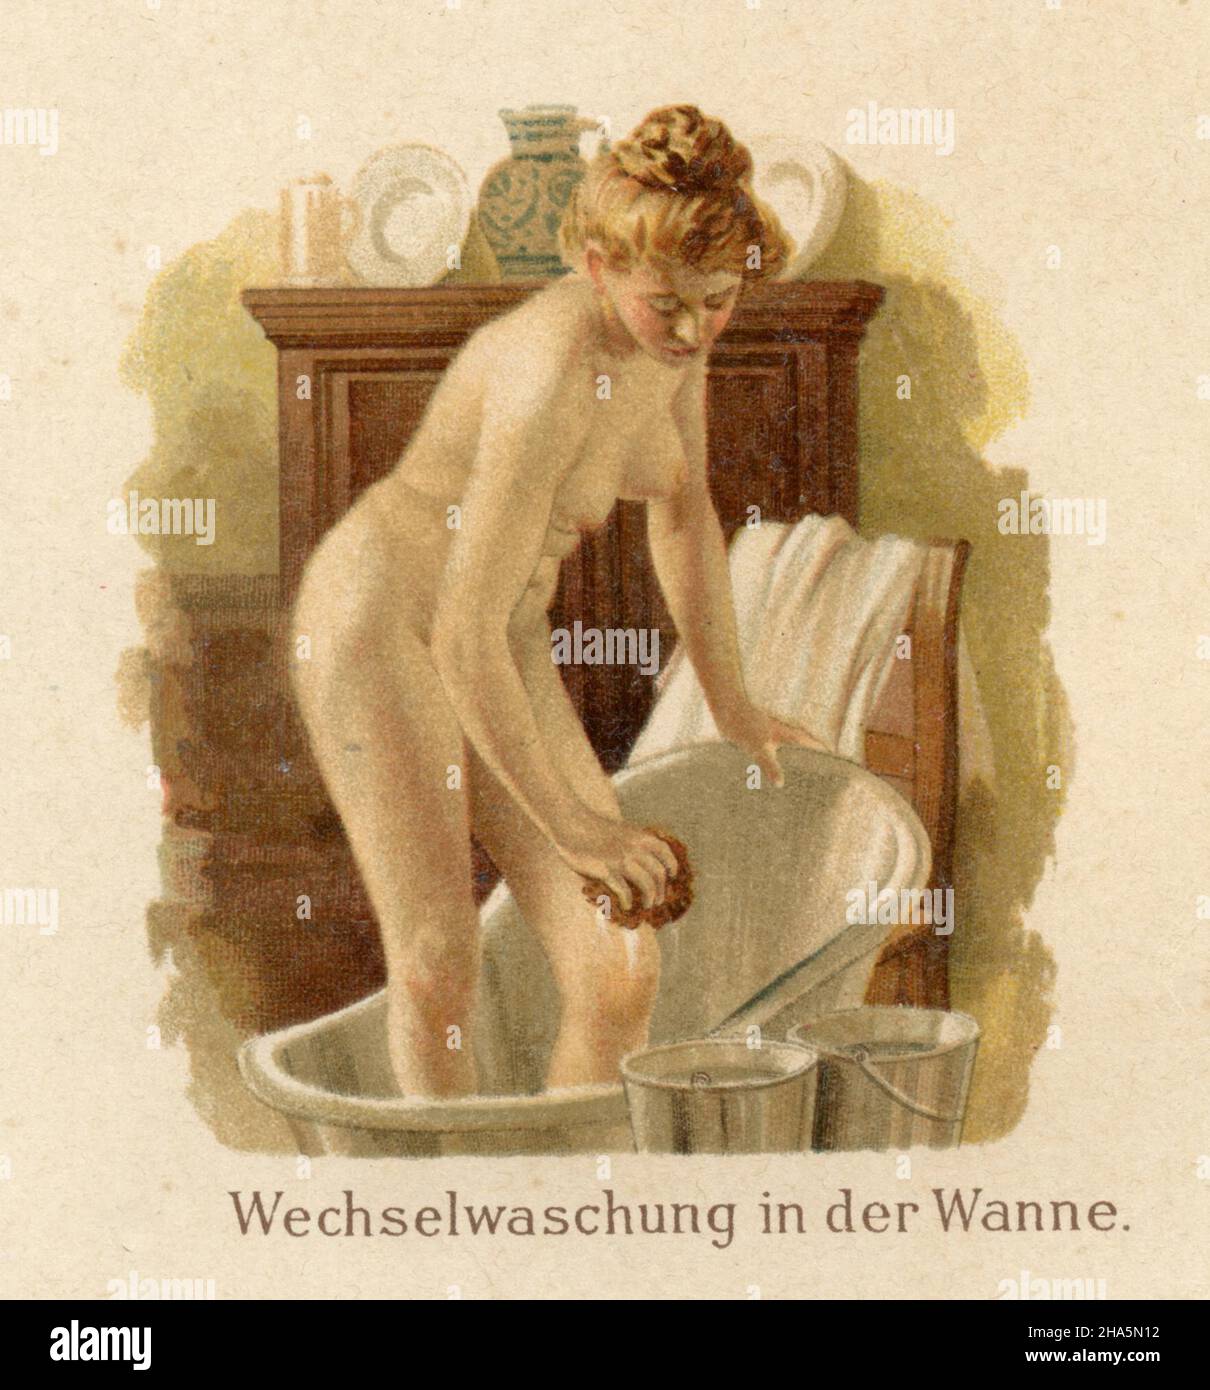 Aplicaciones de agua en enfermería: Lavado alternativo en la tina , (libro de medicina, 1905) Foto de stock